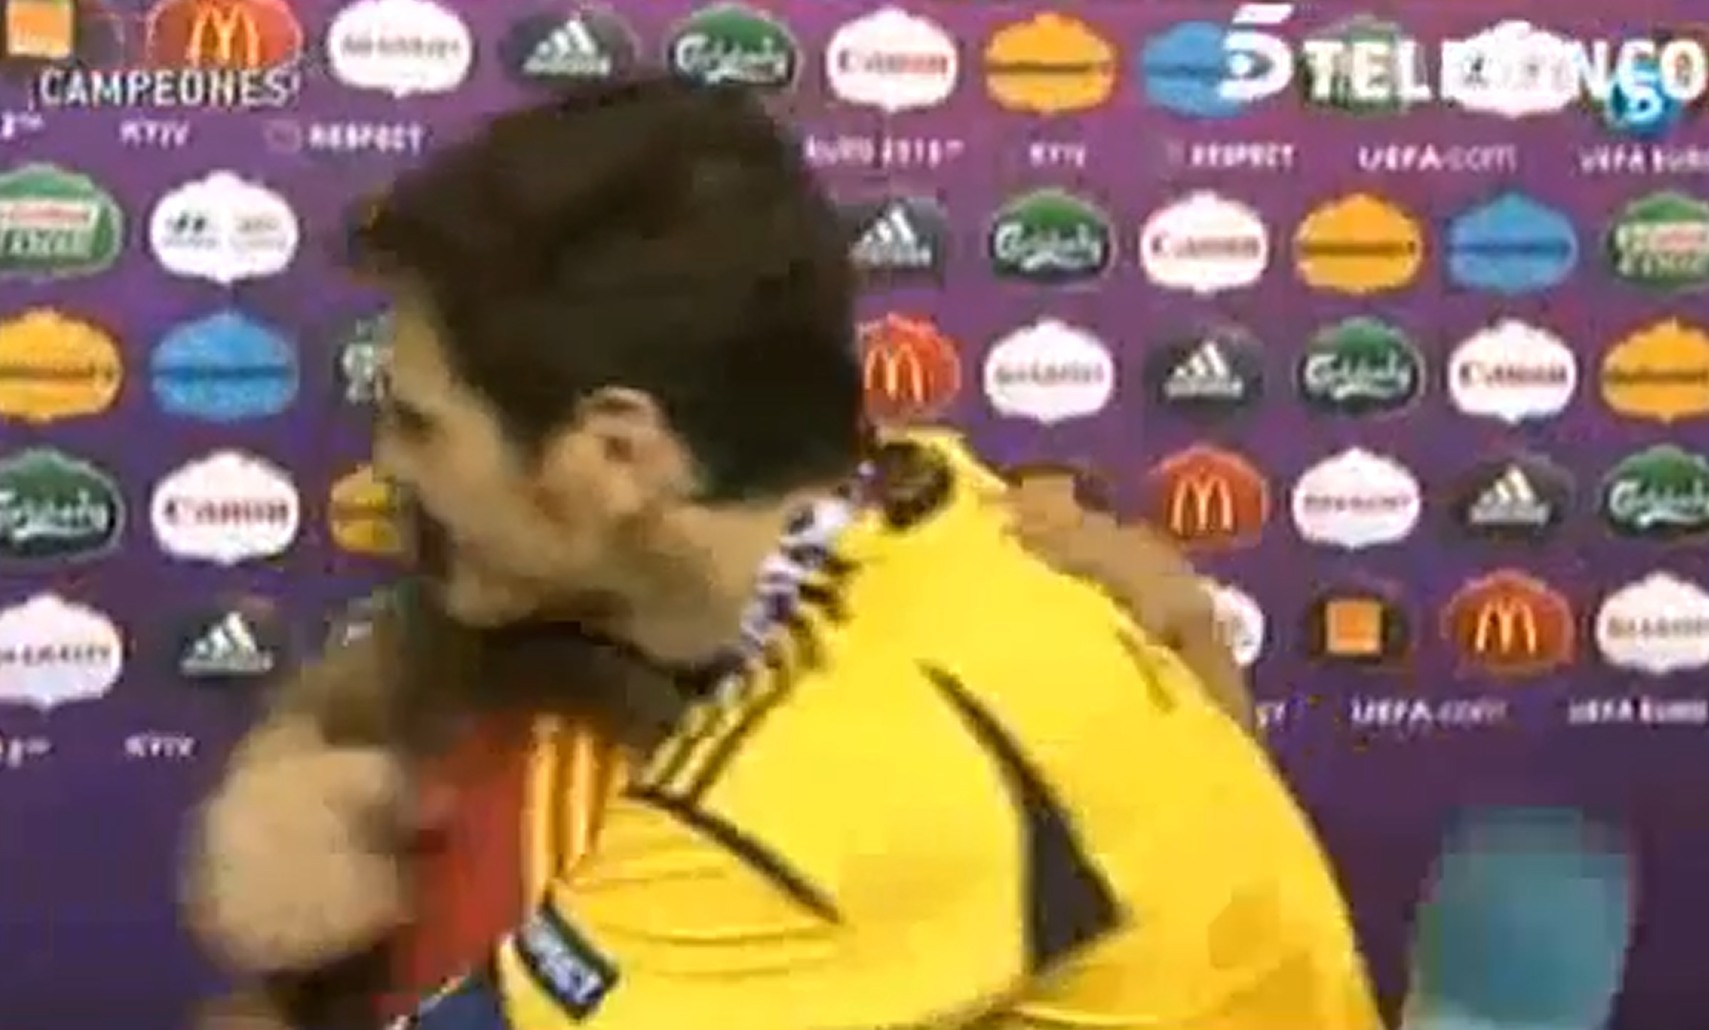 Η Carbonero έπεσε στην αγκαλιά του Casillas την ώρα της συνέντευξης